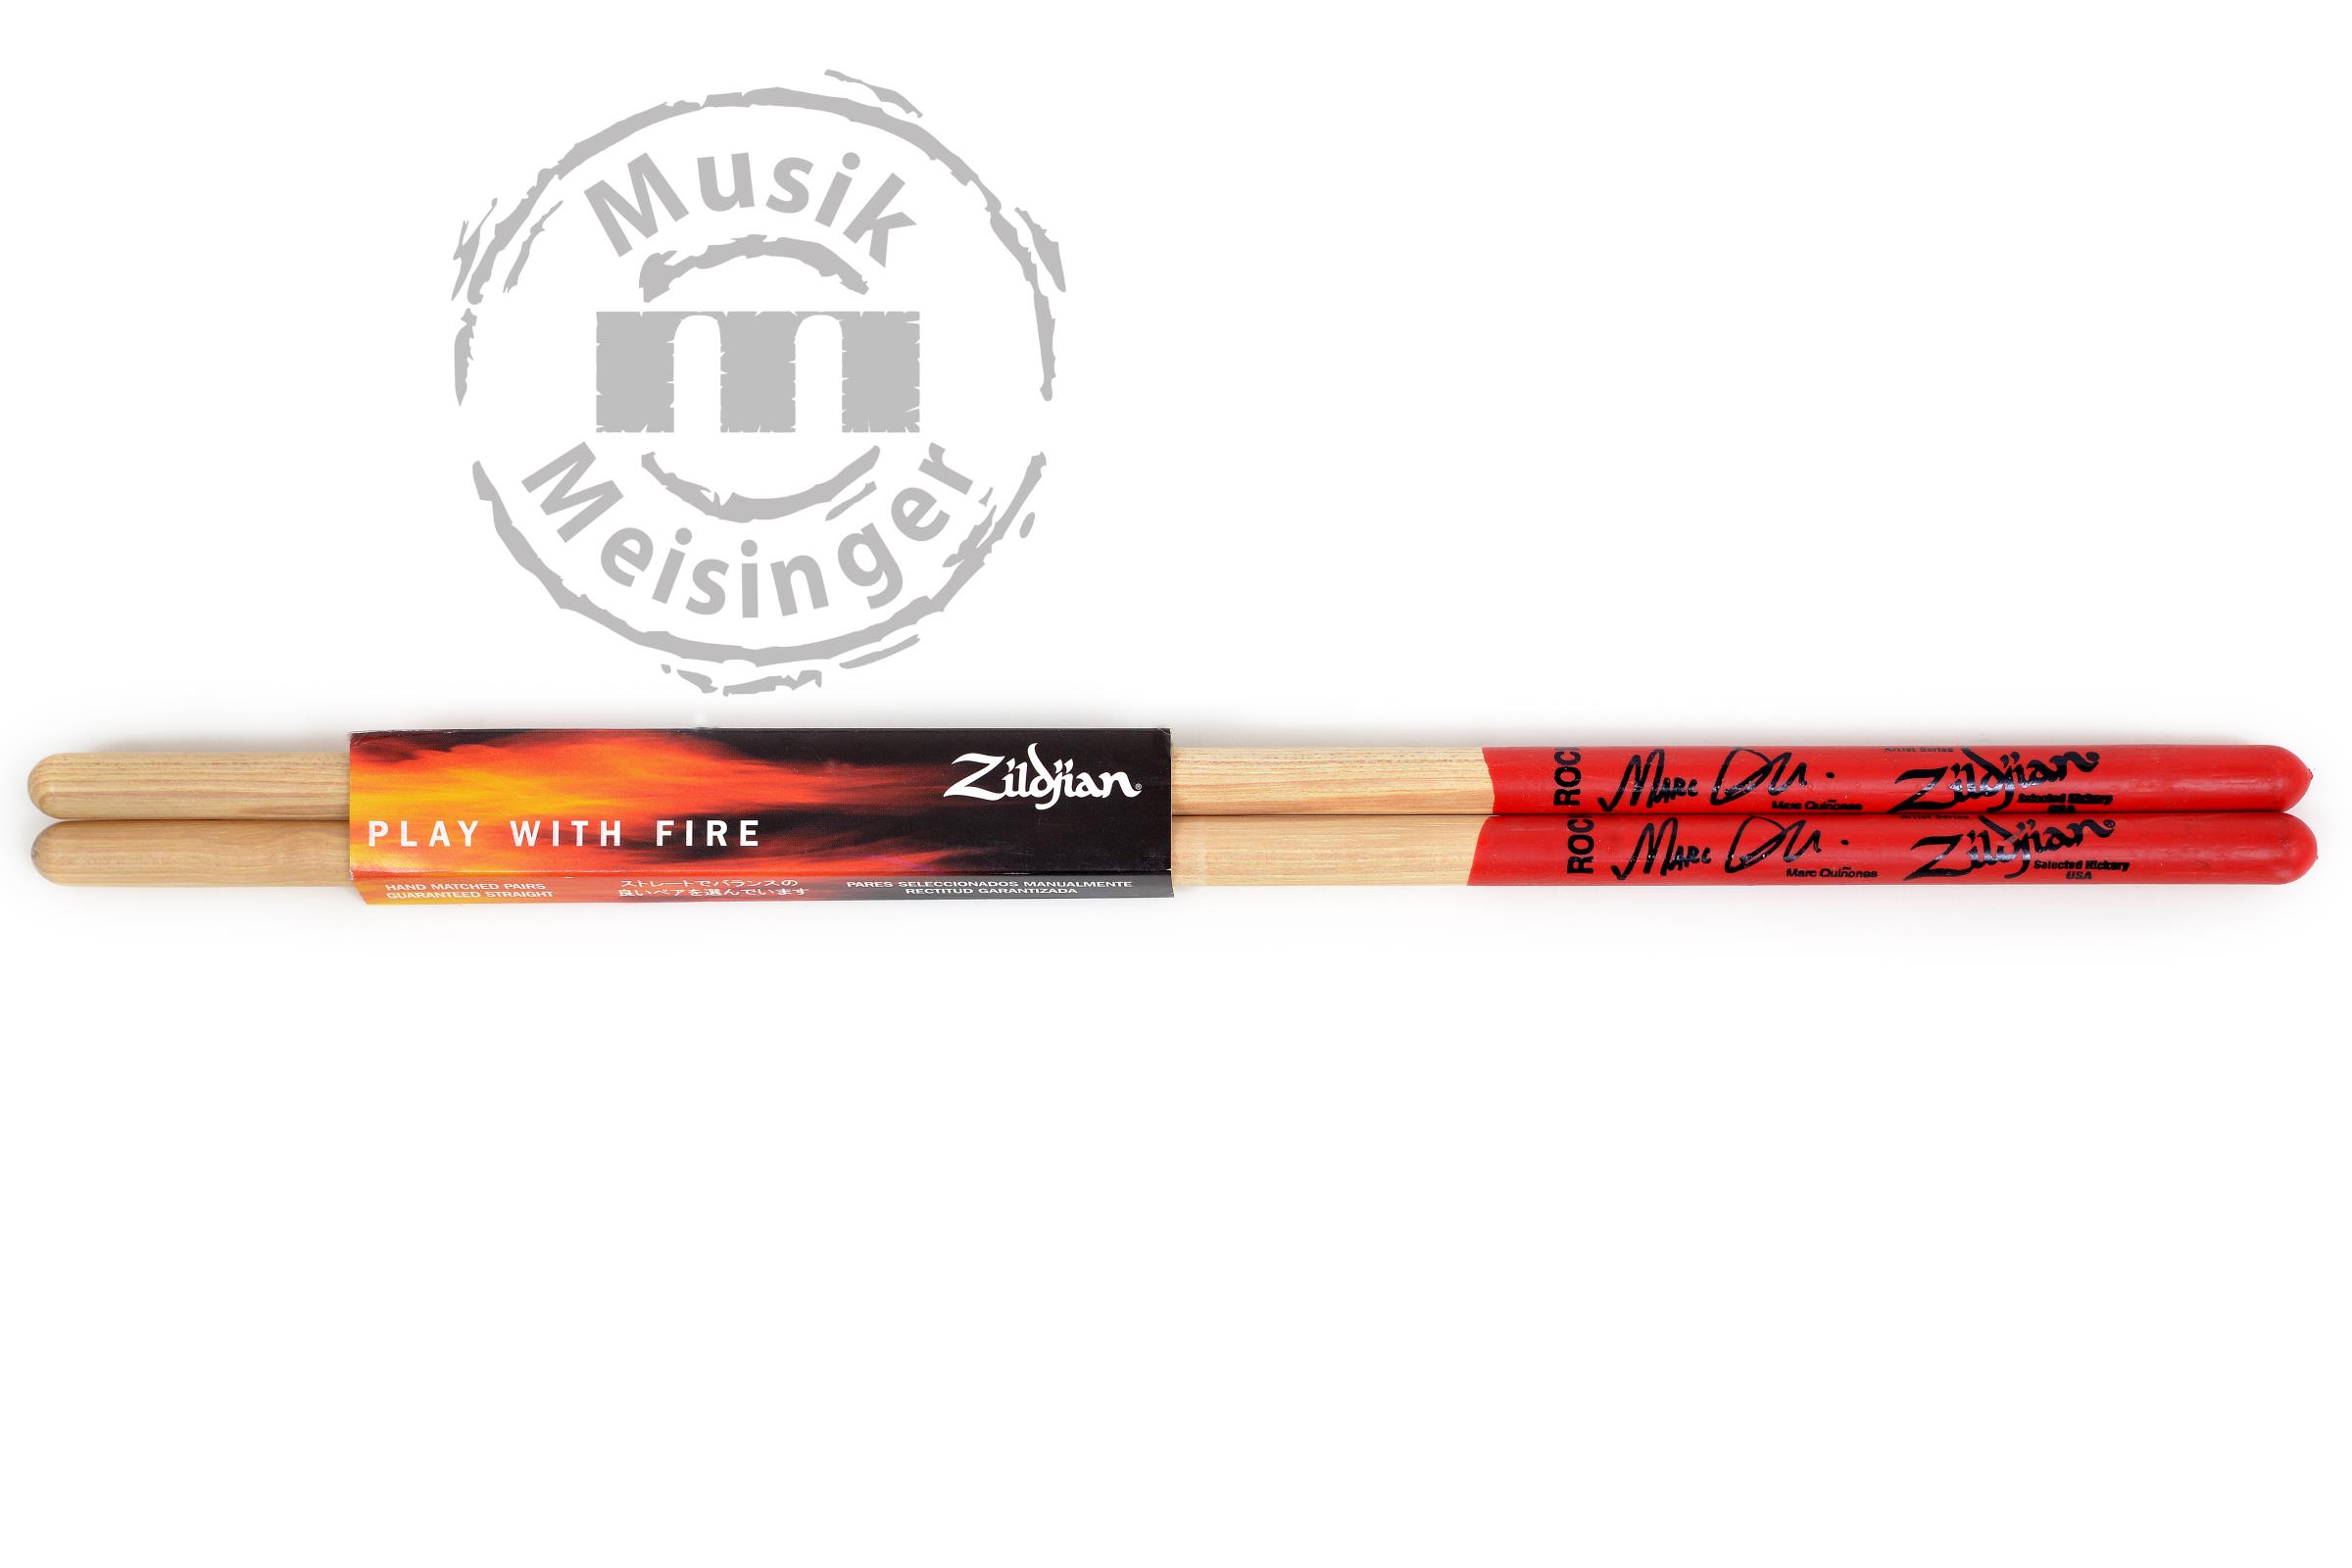 Zildjian Sticks Artist Serie M. Quinones, Rock, Wood-Tip natur, Dip